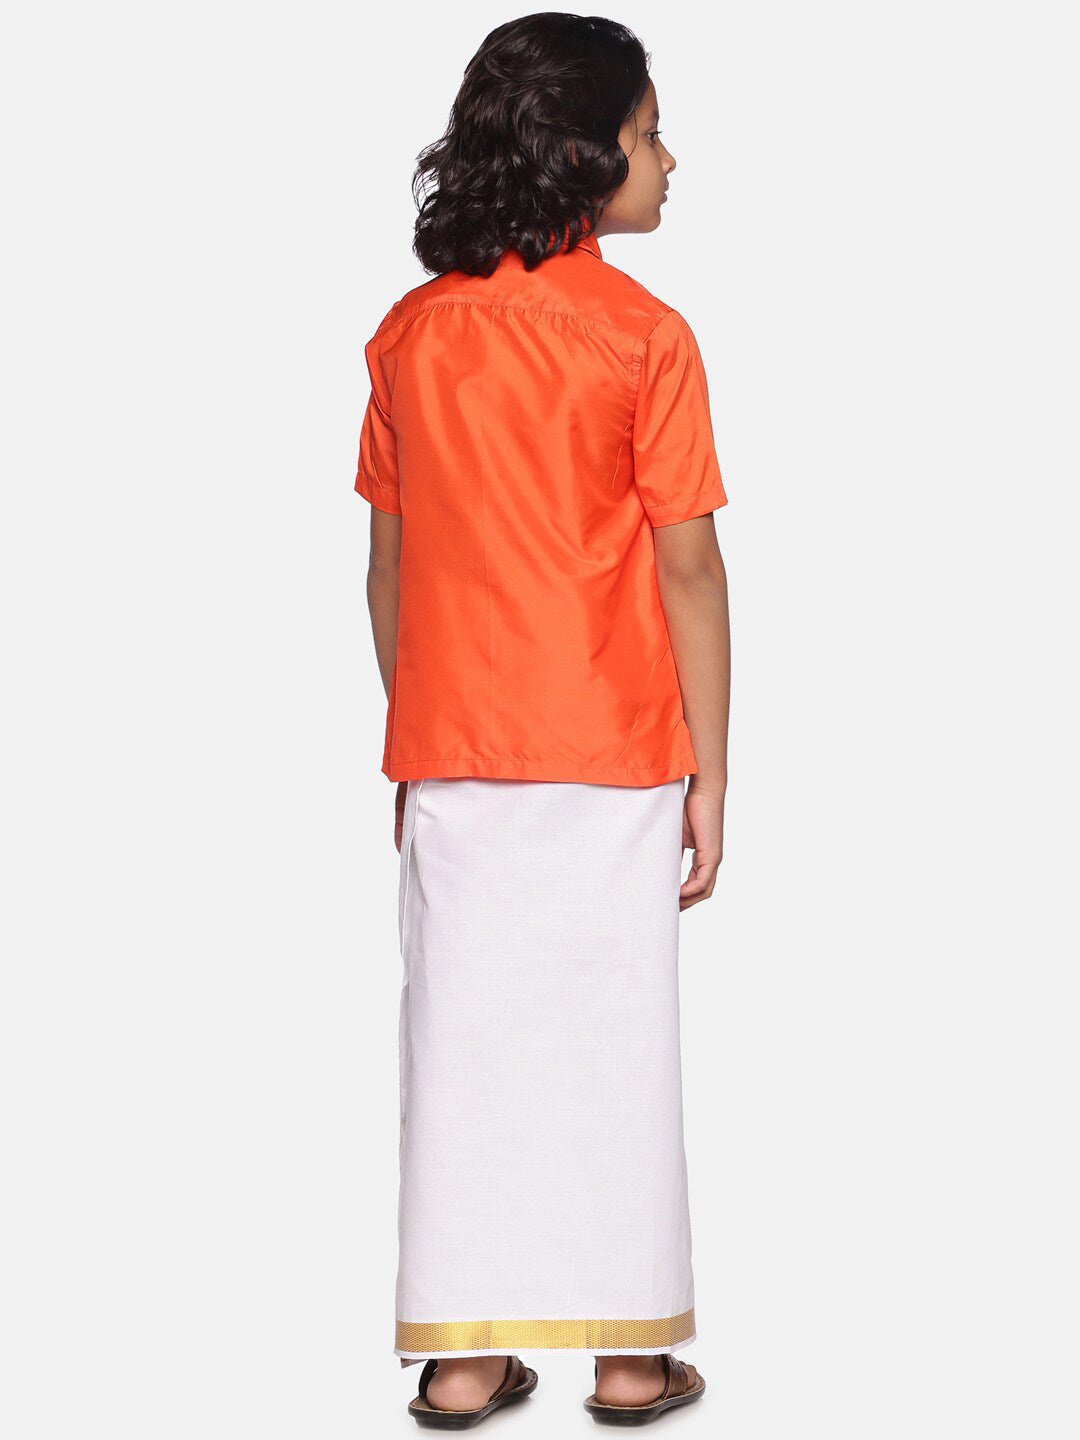 Sethukrishna Boys Orange & White Shirt with Dhoti - Distacart